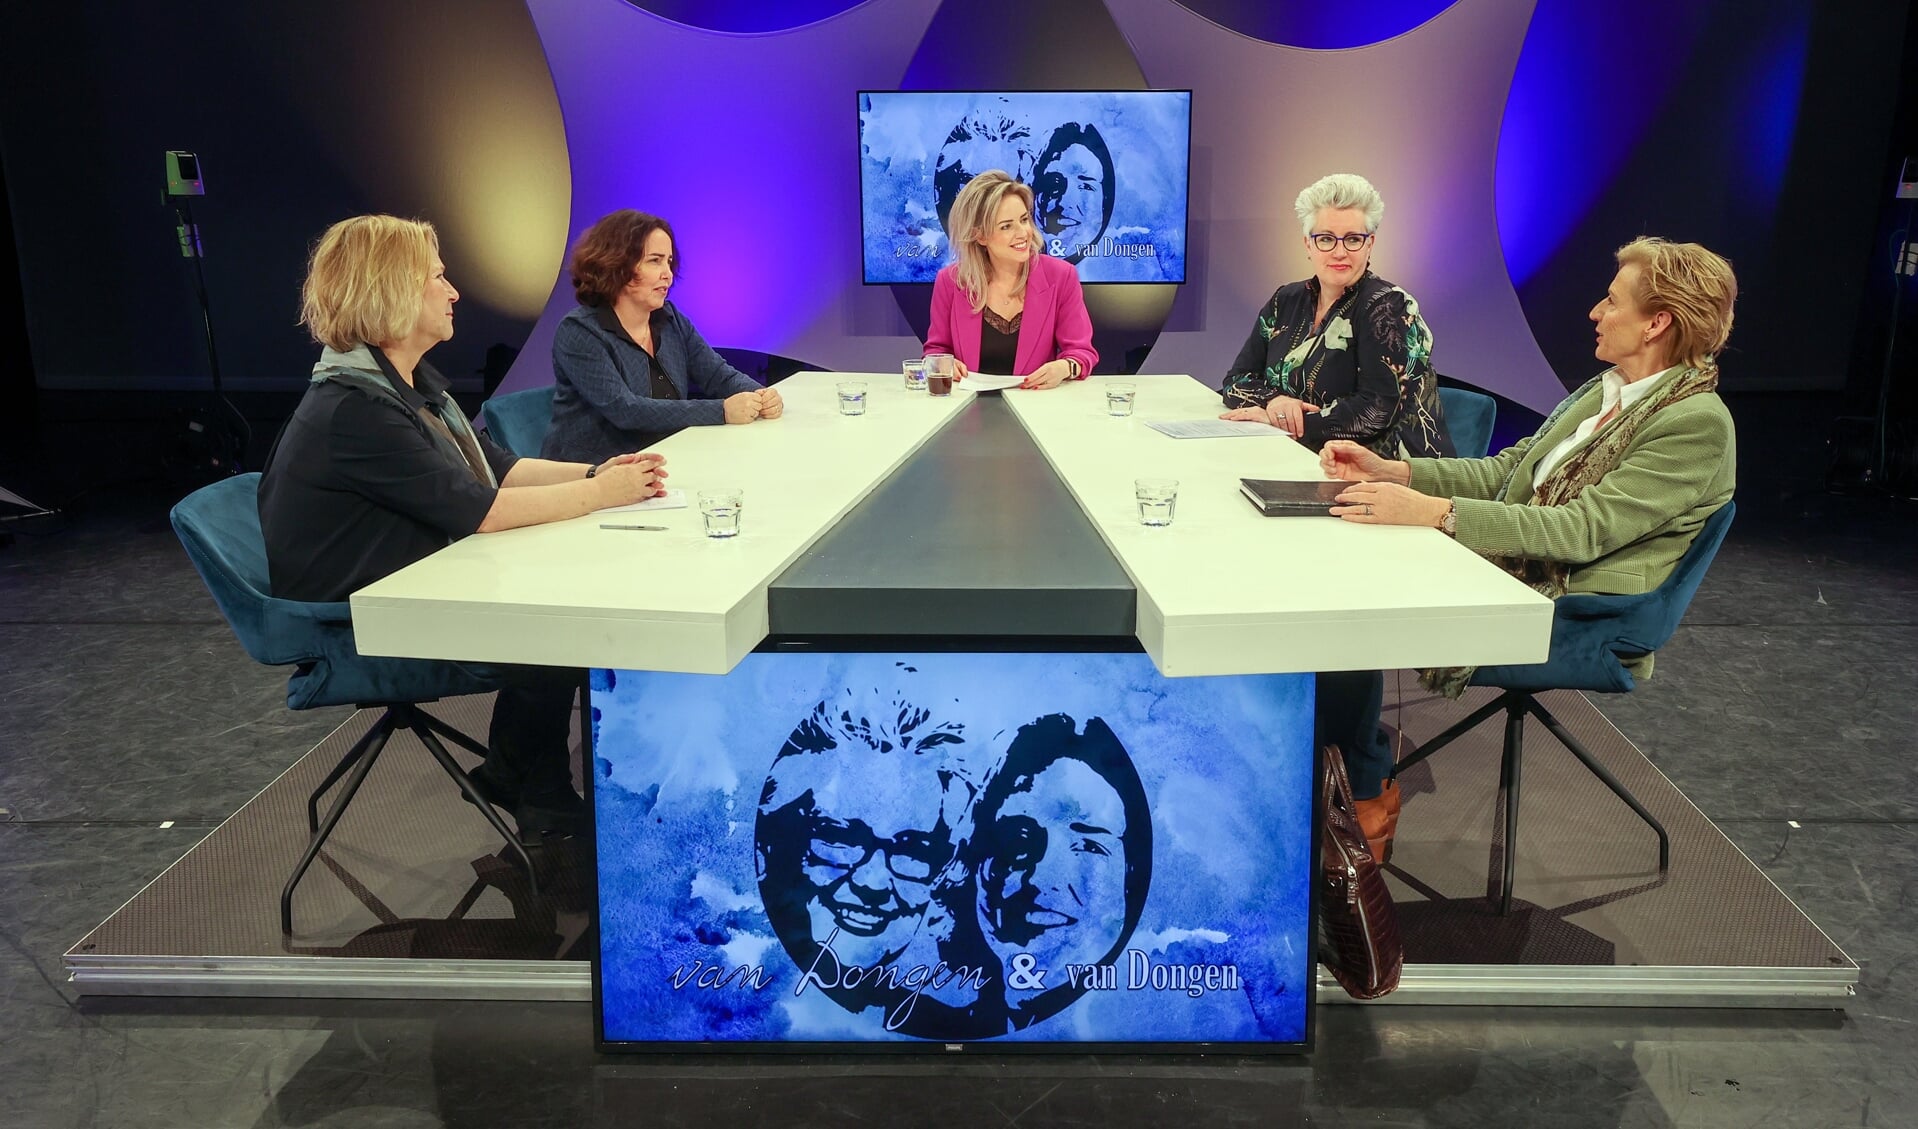 Marionne en Mariënne van Dongen ontvangen verschillende vrouwelijke gasten in hun talkshow met Anne-Marie Fokkens. FOTO: Bert Jansen.